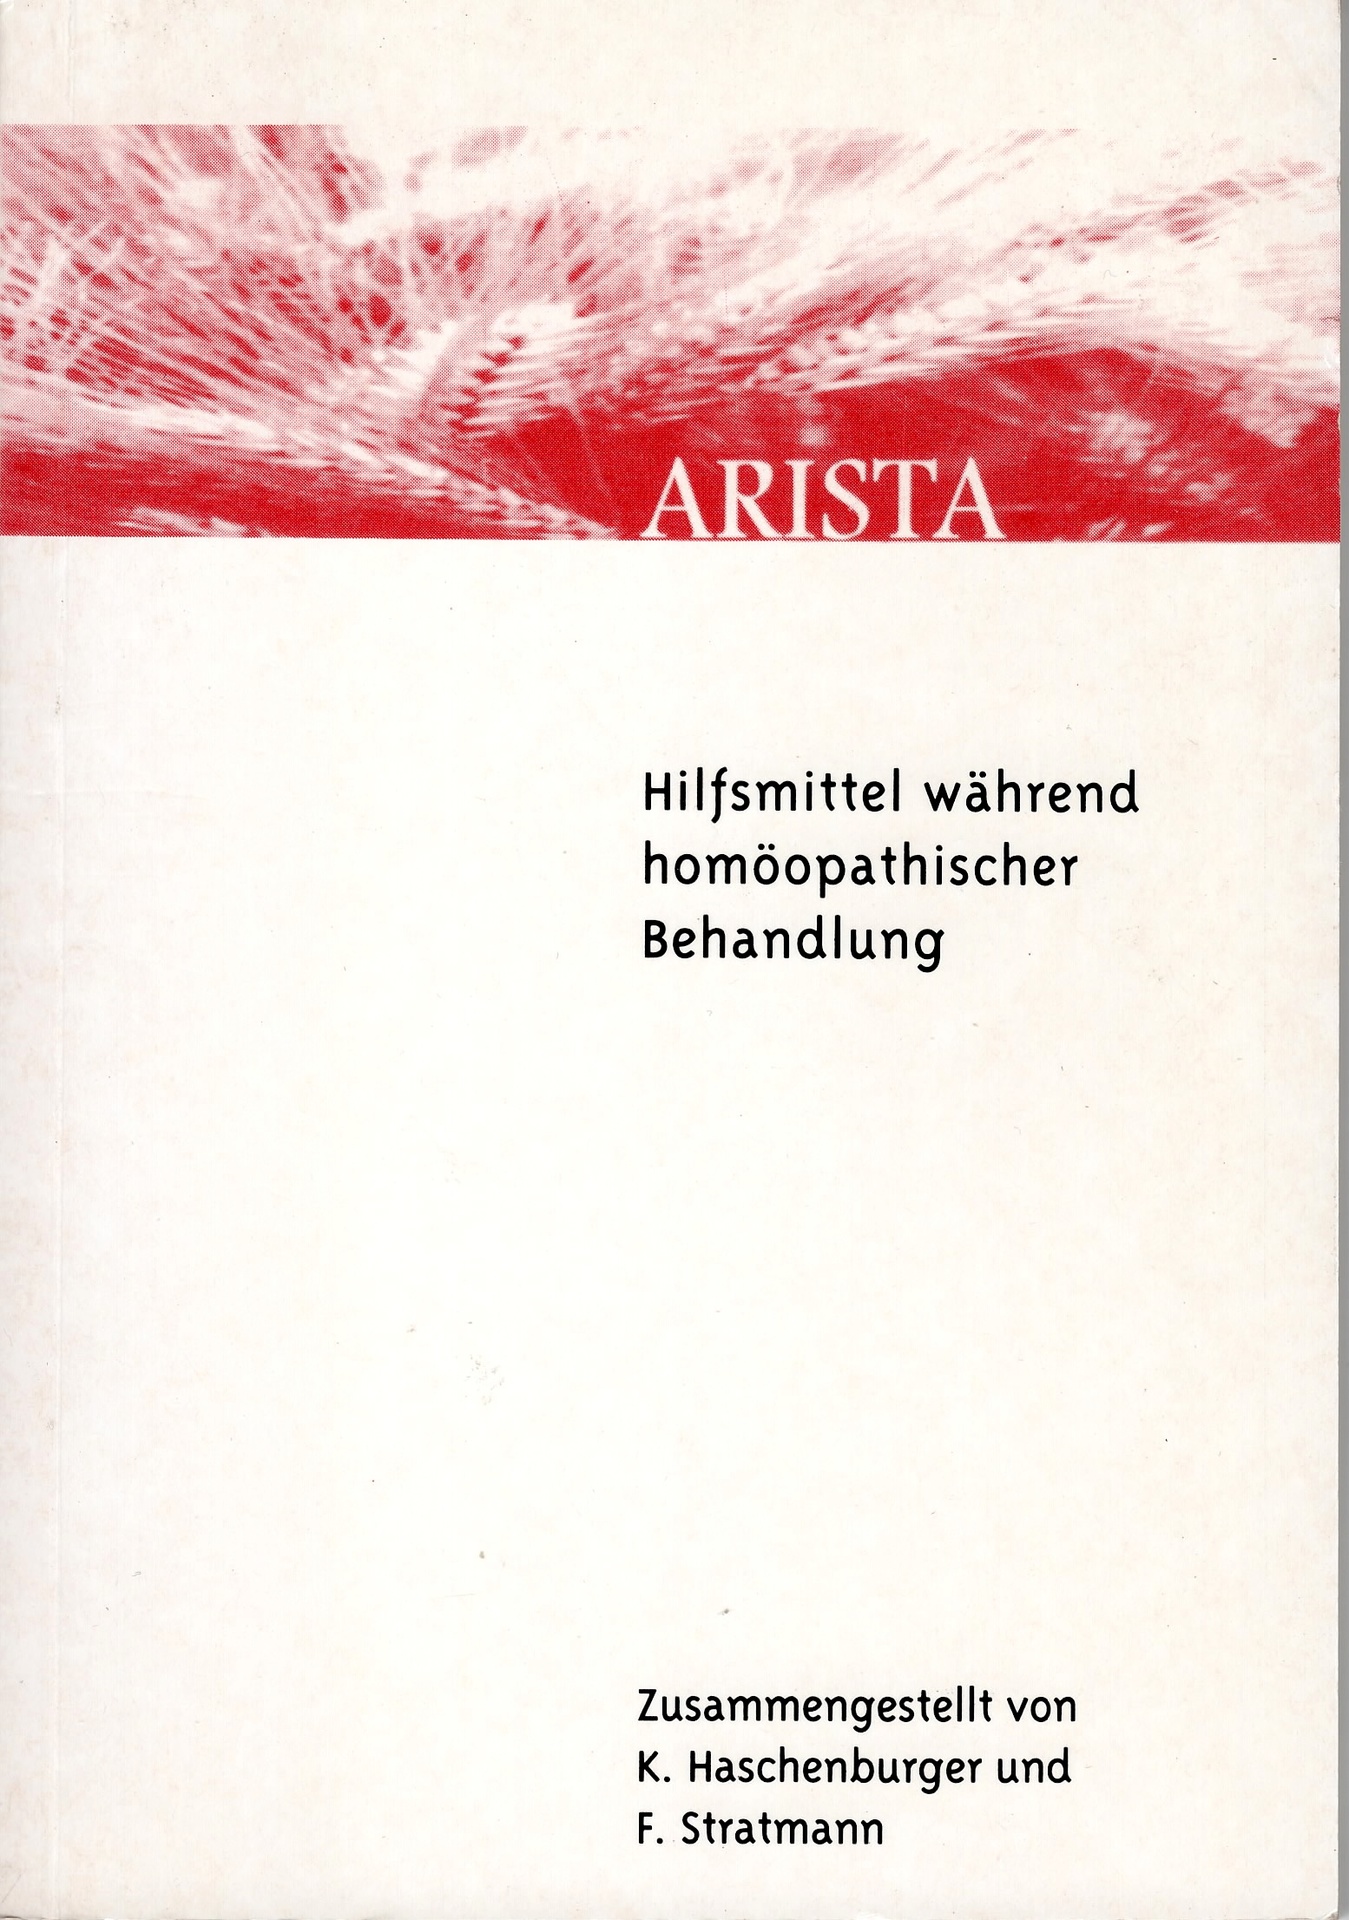 Arista - Hilfsmittel während homöopathischer Behandlung.  2., überarbeitete Auflage - Haschenburger, Karin; Stratmann, Friederike